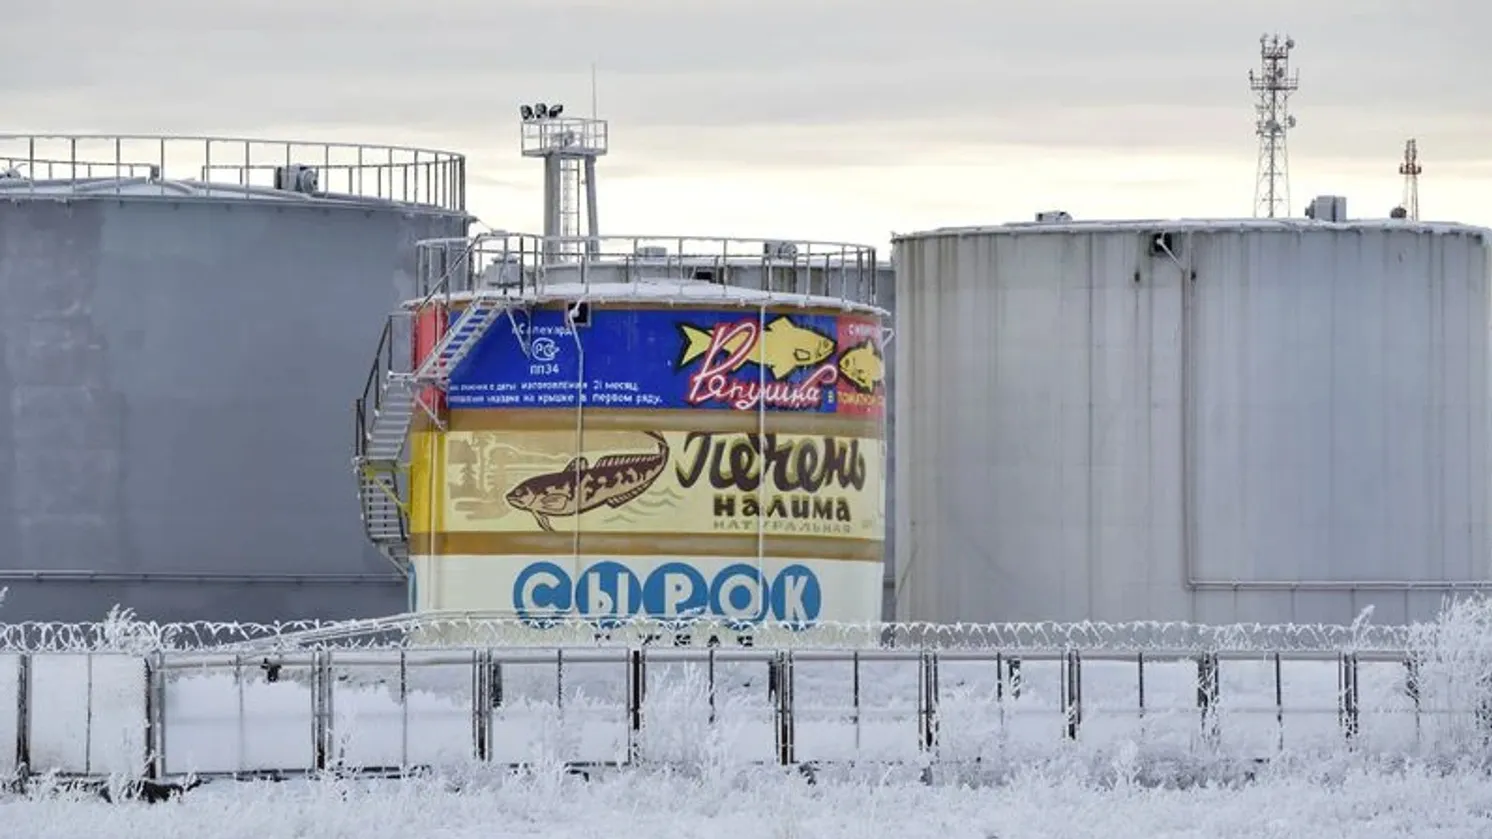 Мурал "Рыбные консервы" украшает резервуар с топливом в Салехарде. Фото: Андрей Ткачёв / "Ямал-Медиа"